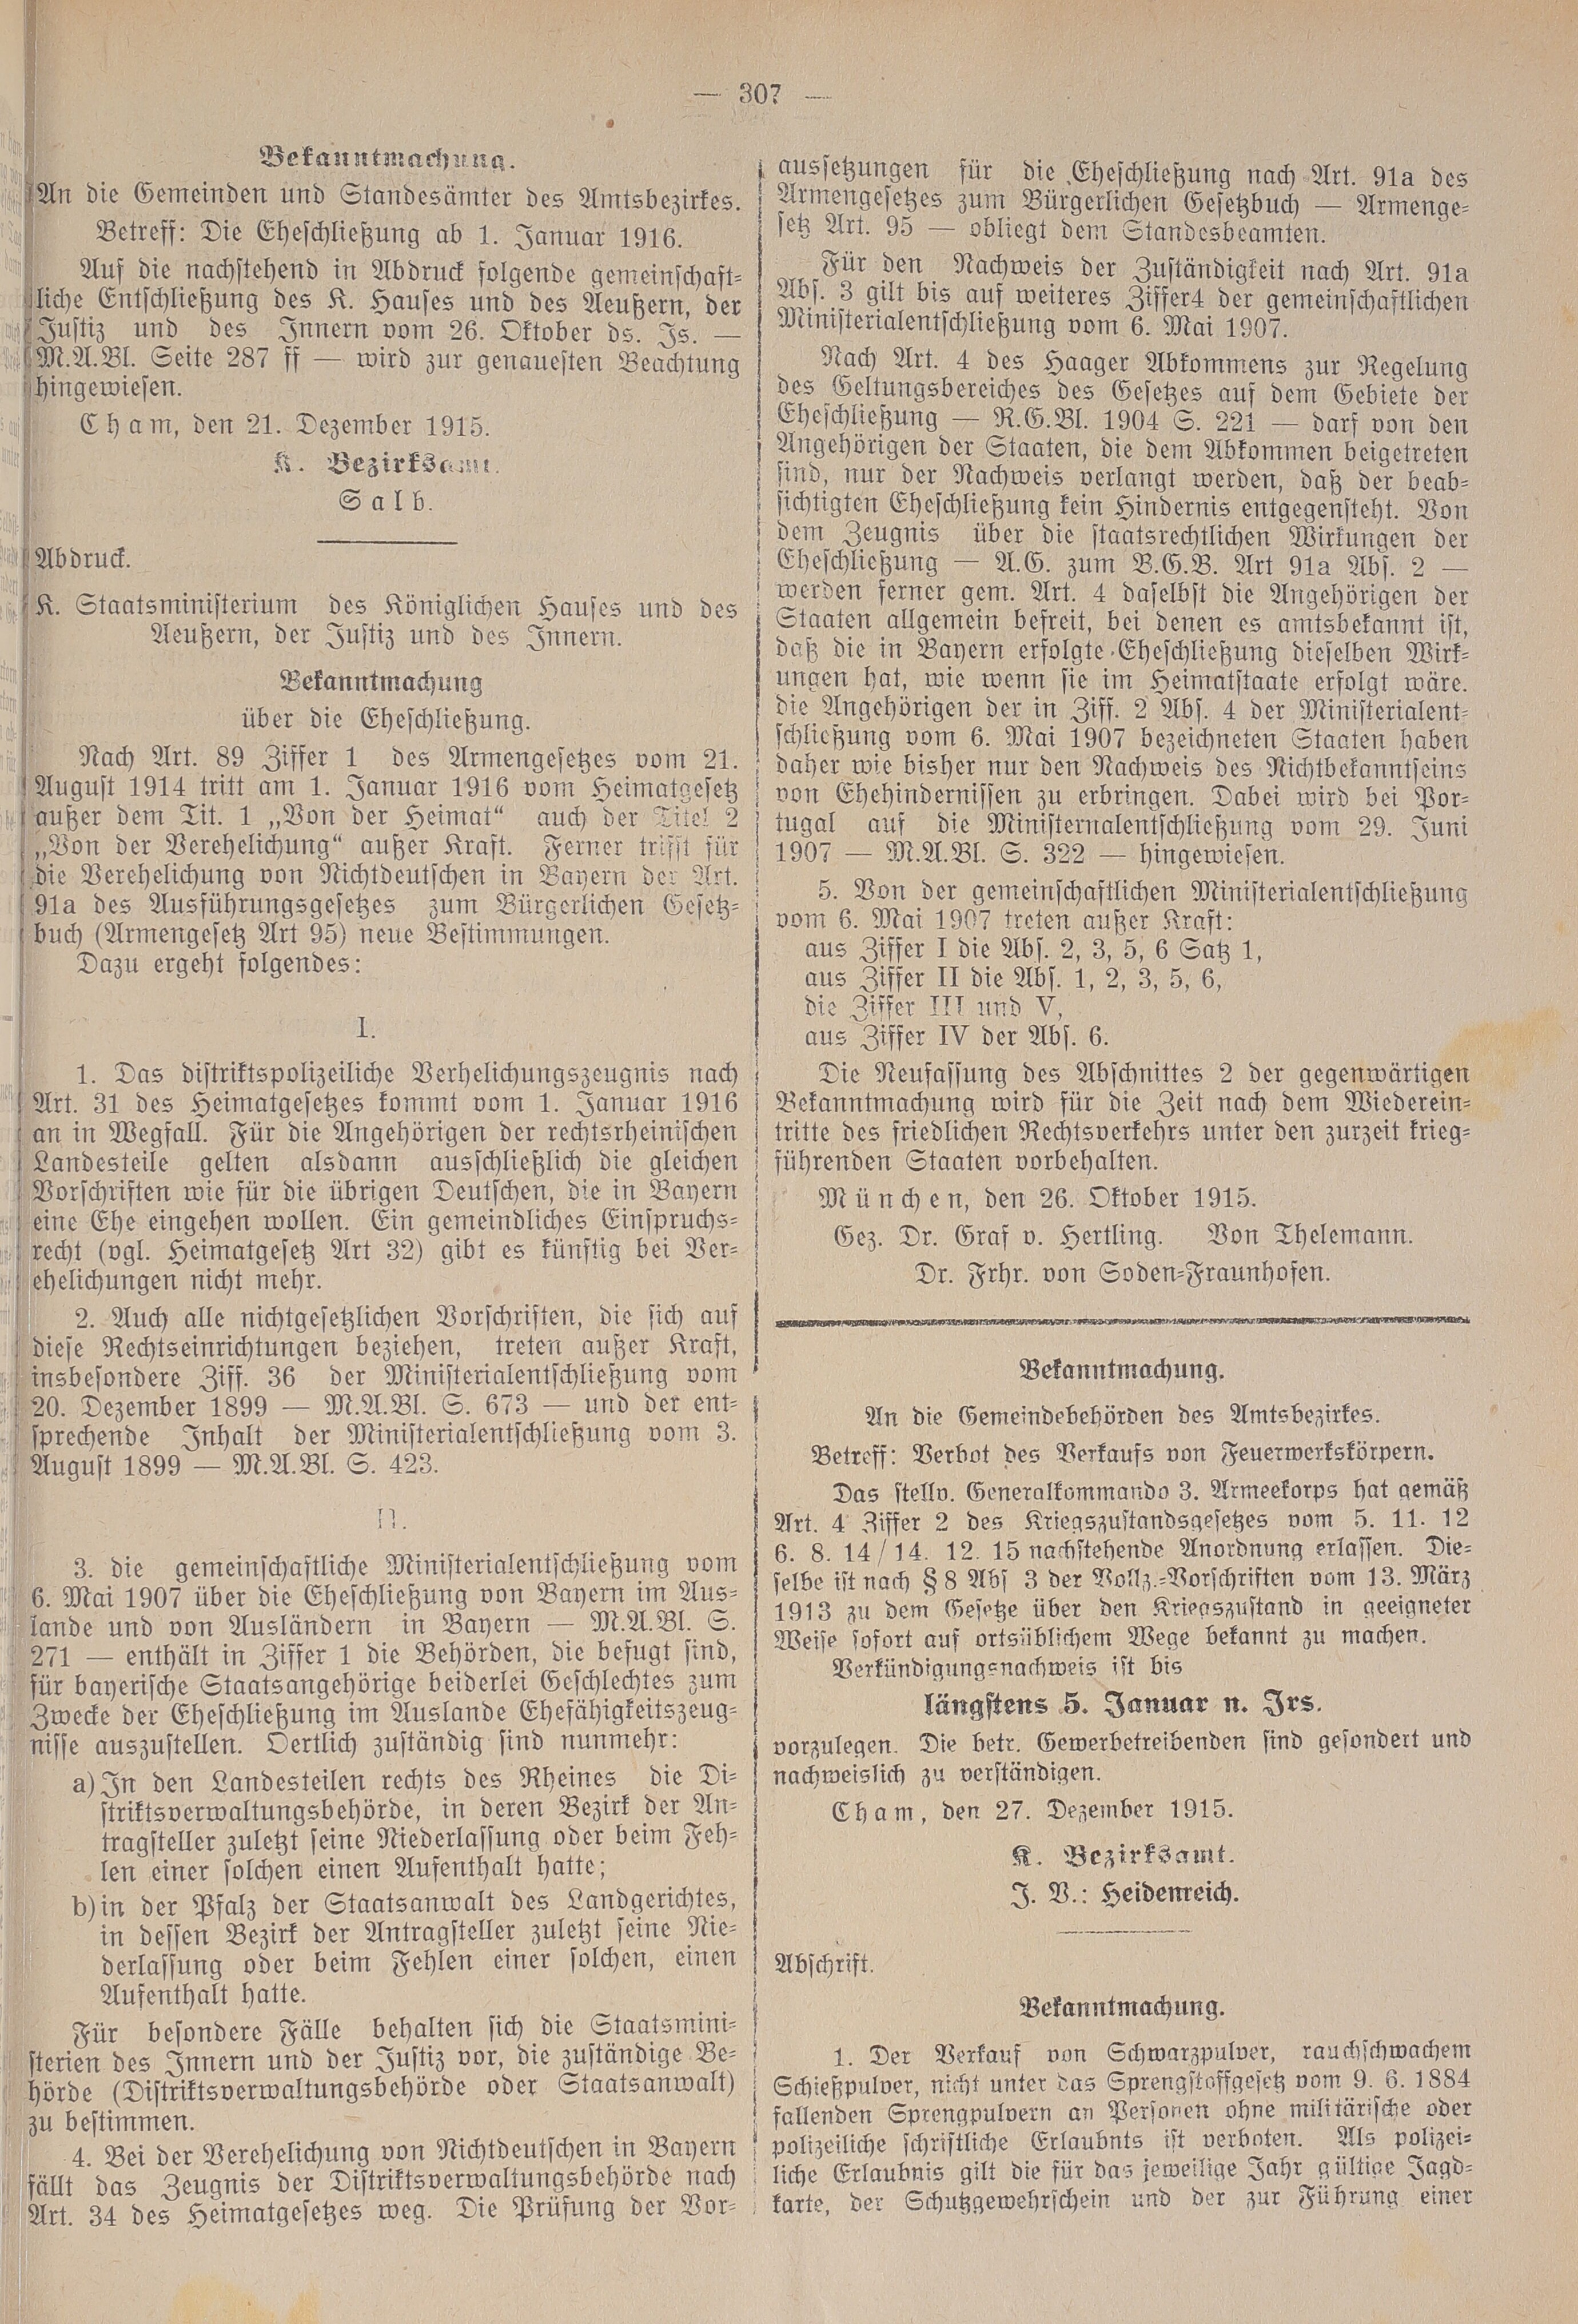 3. amtsblatt-cham-1915-12-28-n83_3000